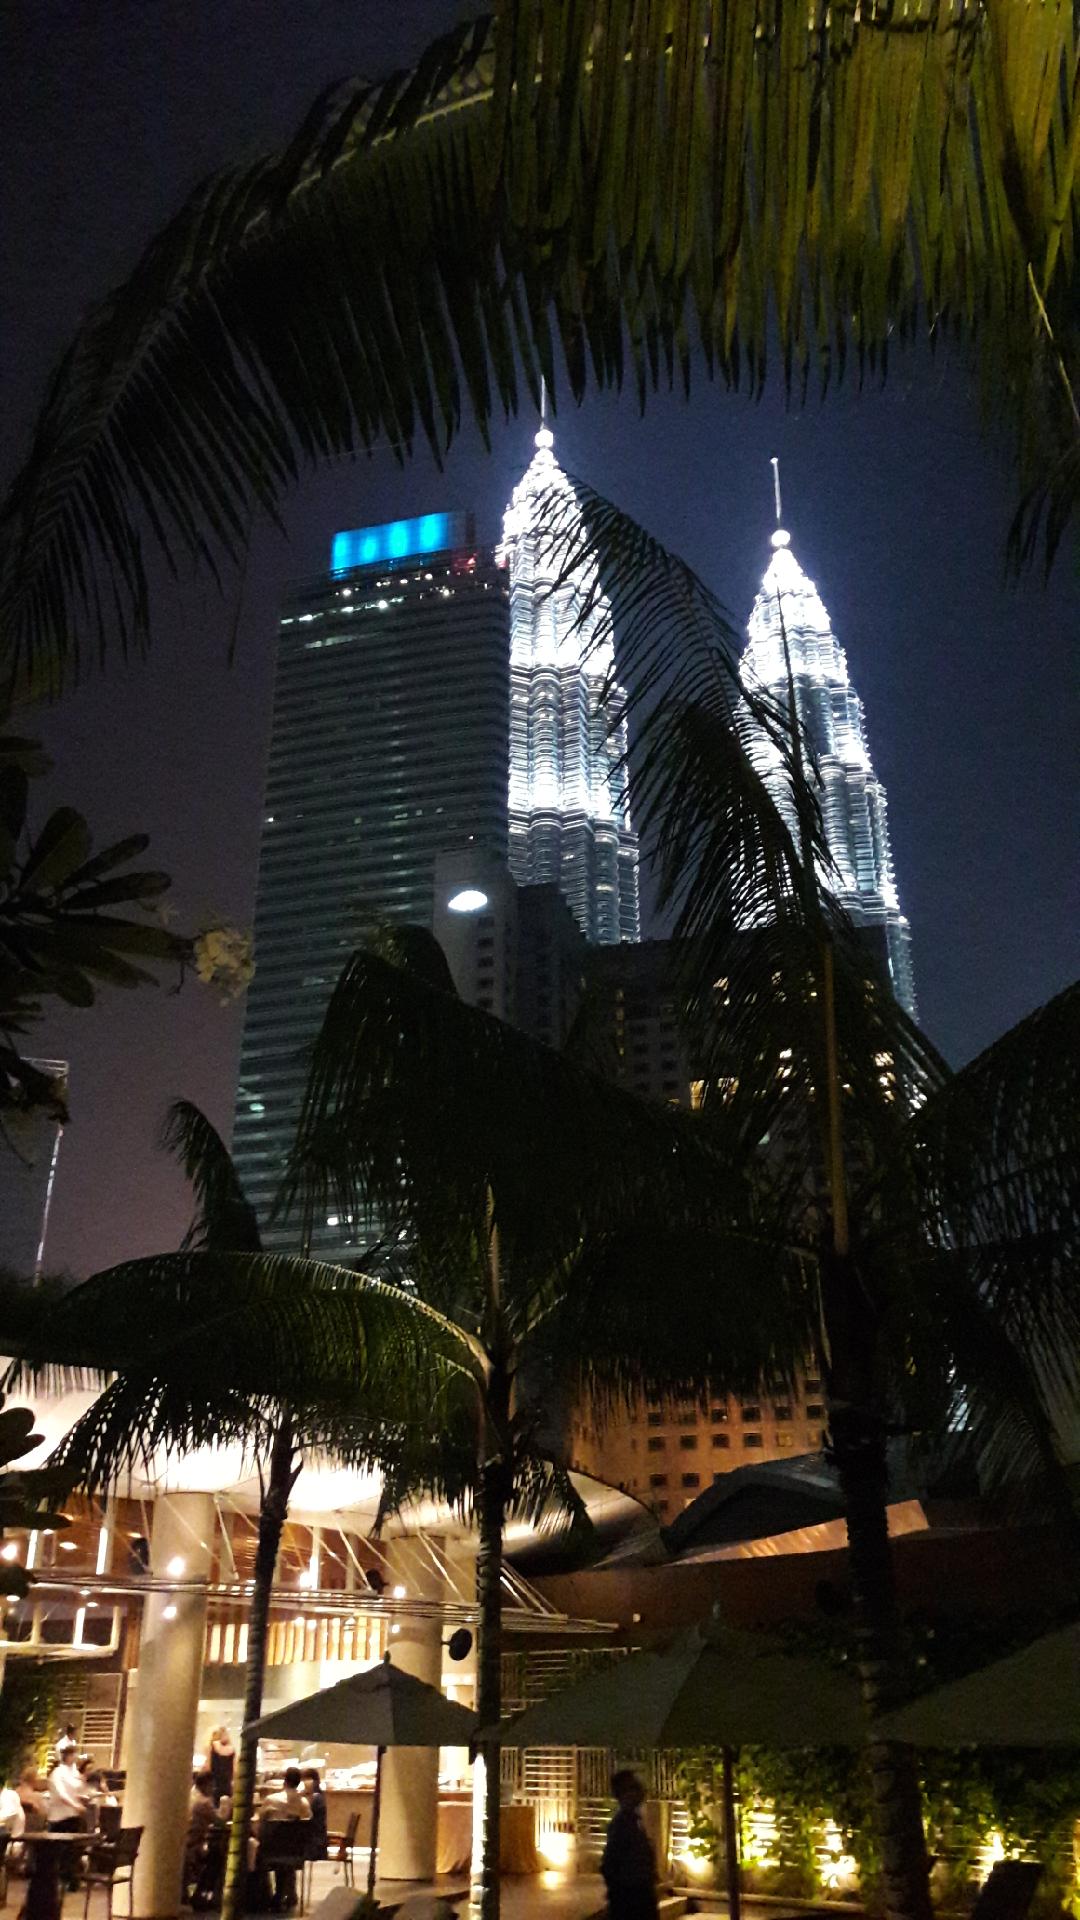 Twin towers Kuala Lumpur